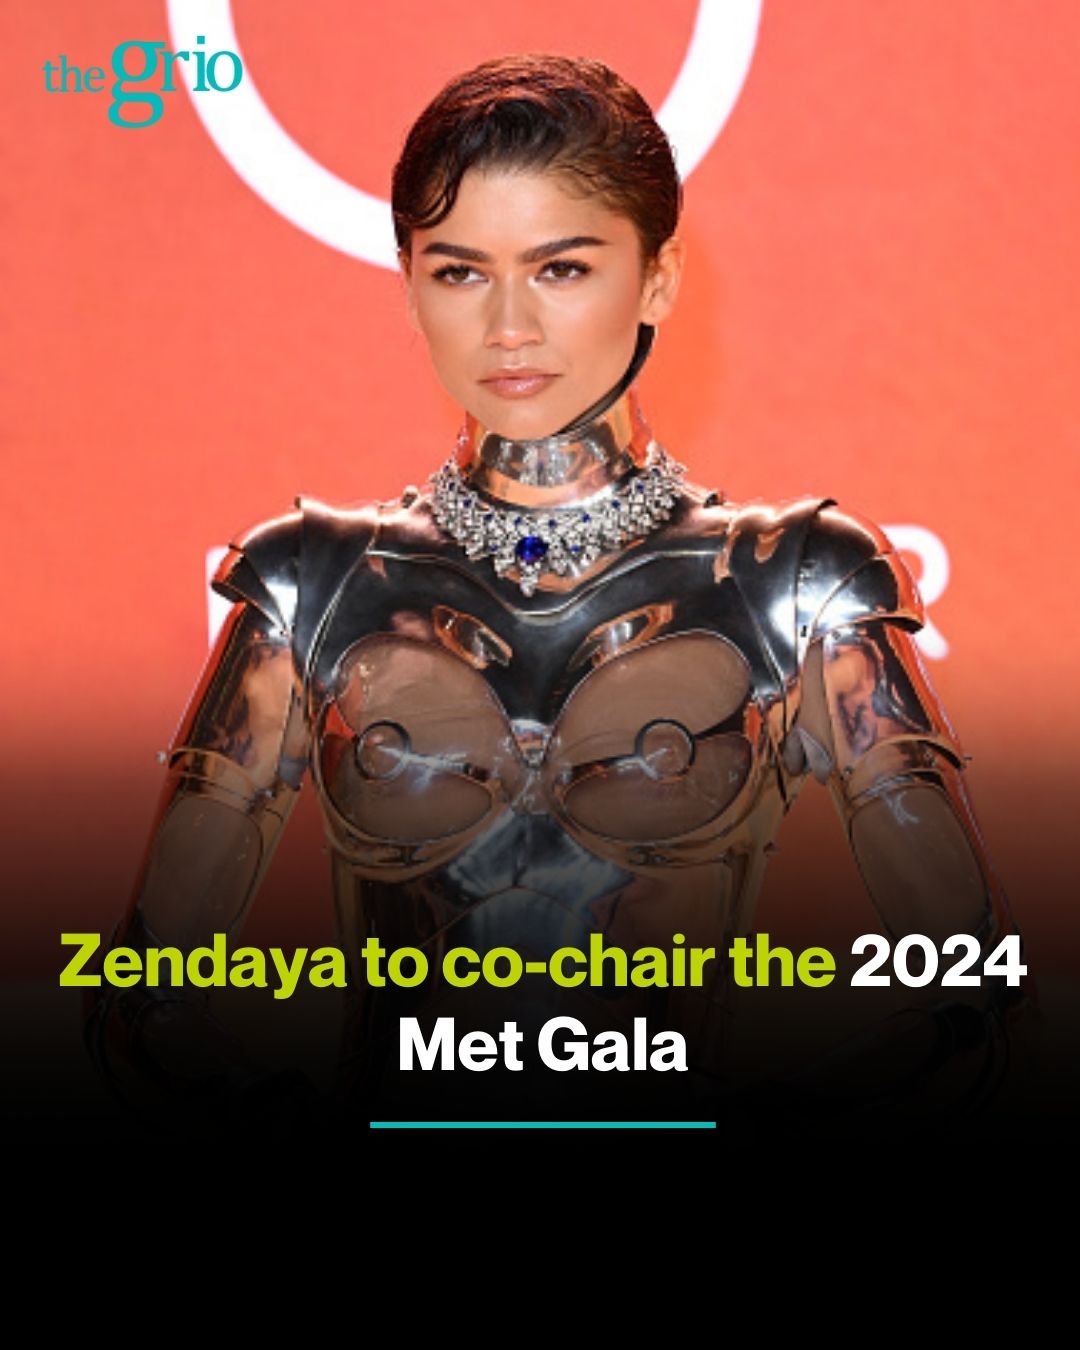 Zendaya is returning to the Met Gala 2024 after four-year hiatus